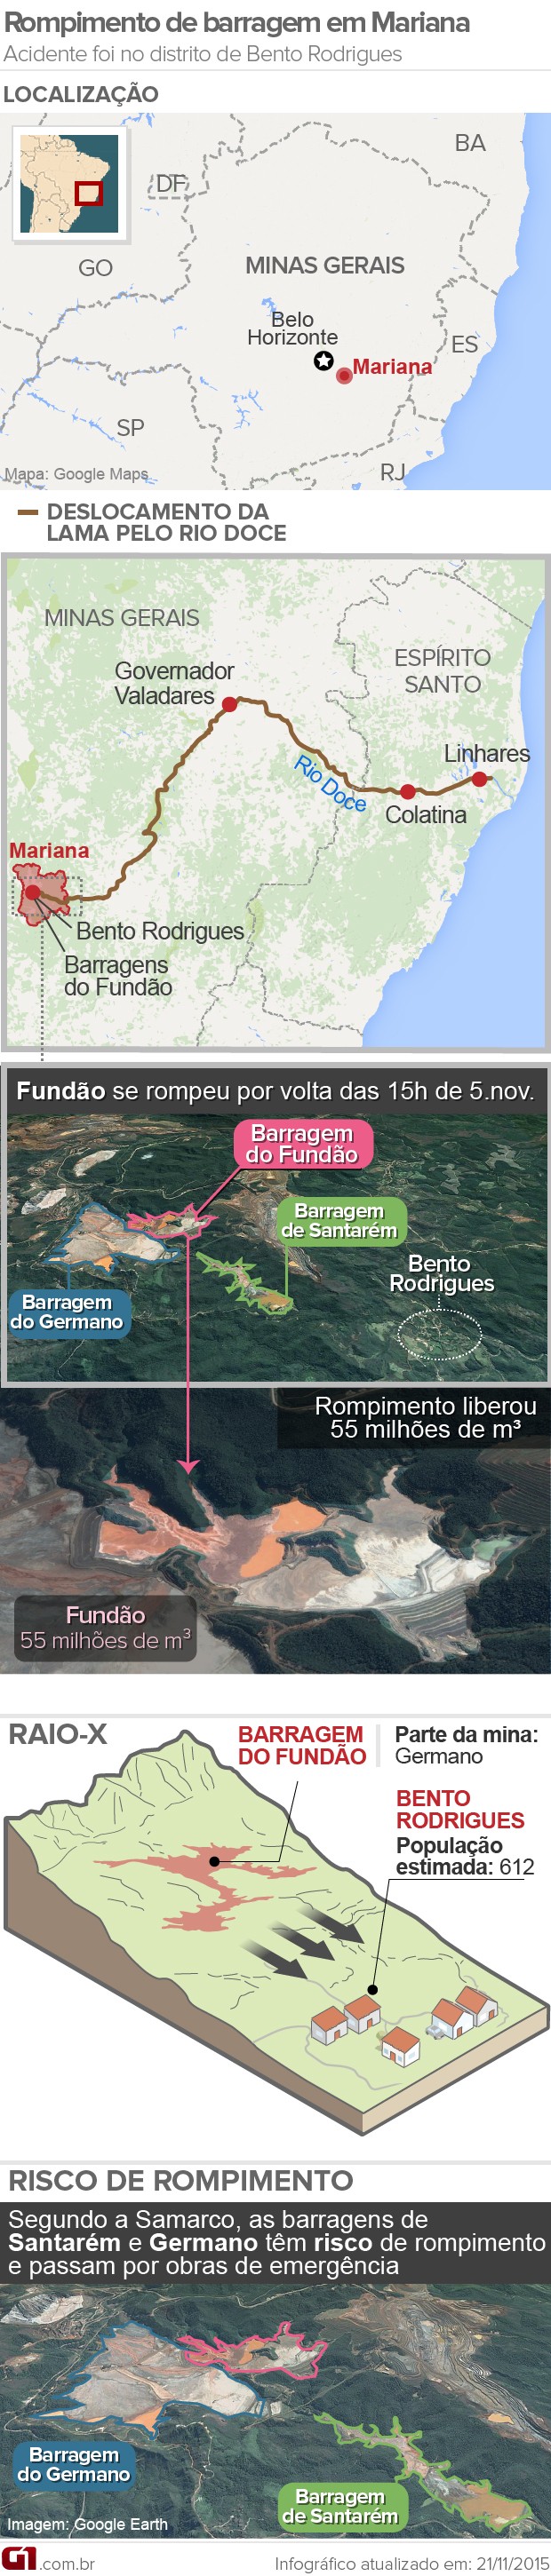 Infográfico: rompimento da barragem de Mariana (MG) (Foto: Arte G1)